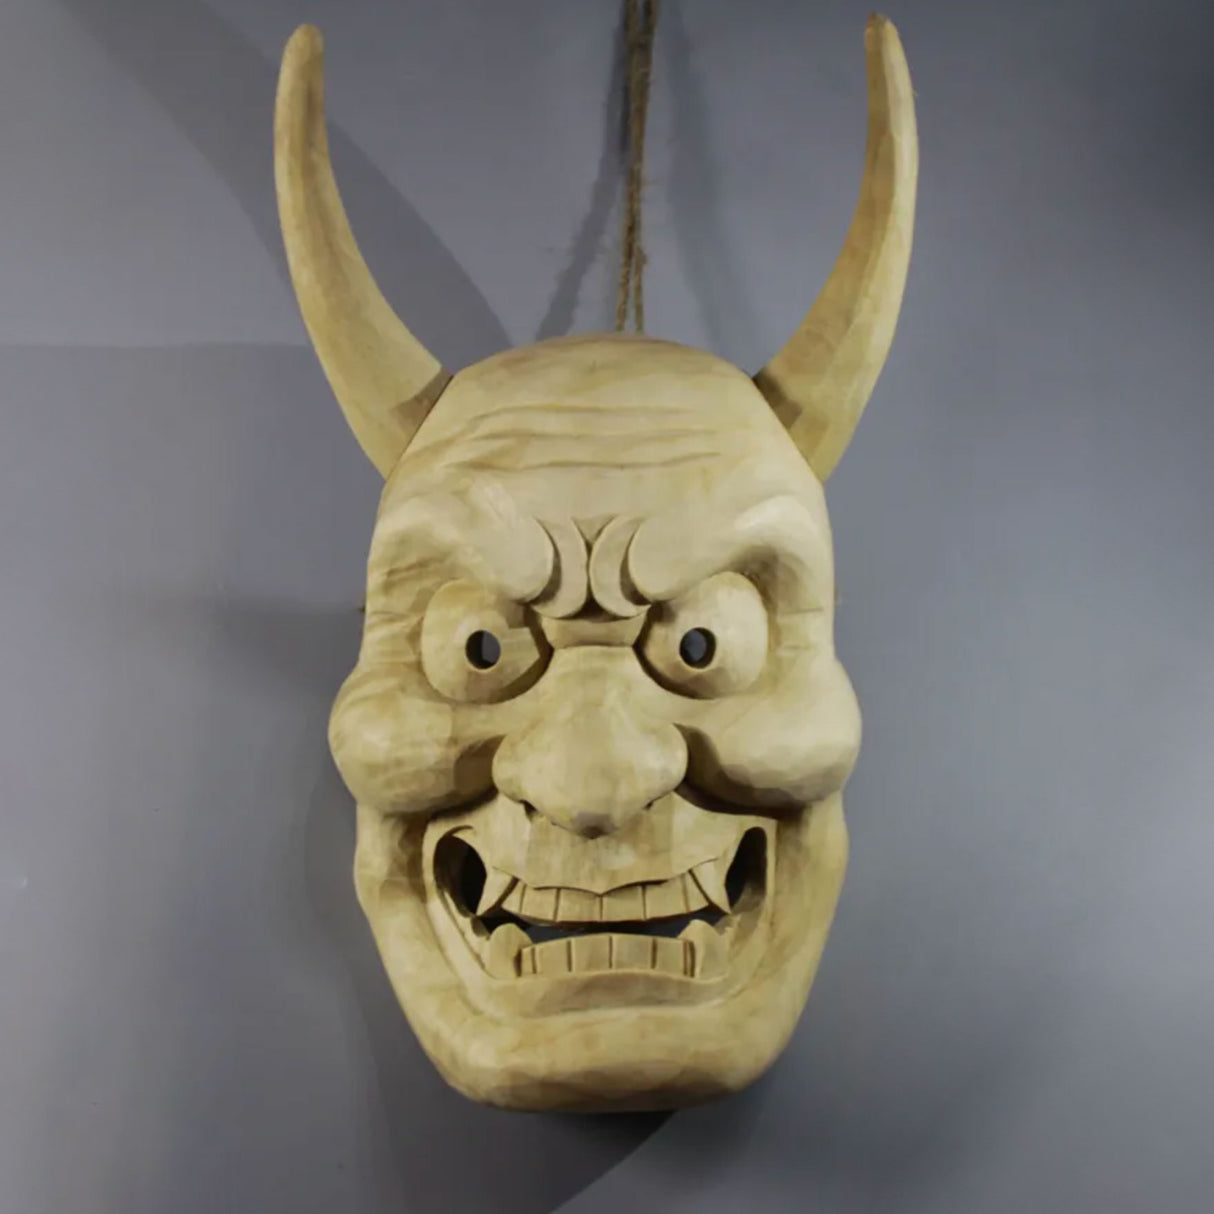 Masque japonais en bois démon à cornes (masque décoratif)Masque japonais en bois démon à cornes (masque décoratif)